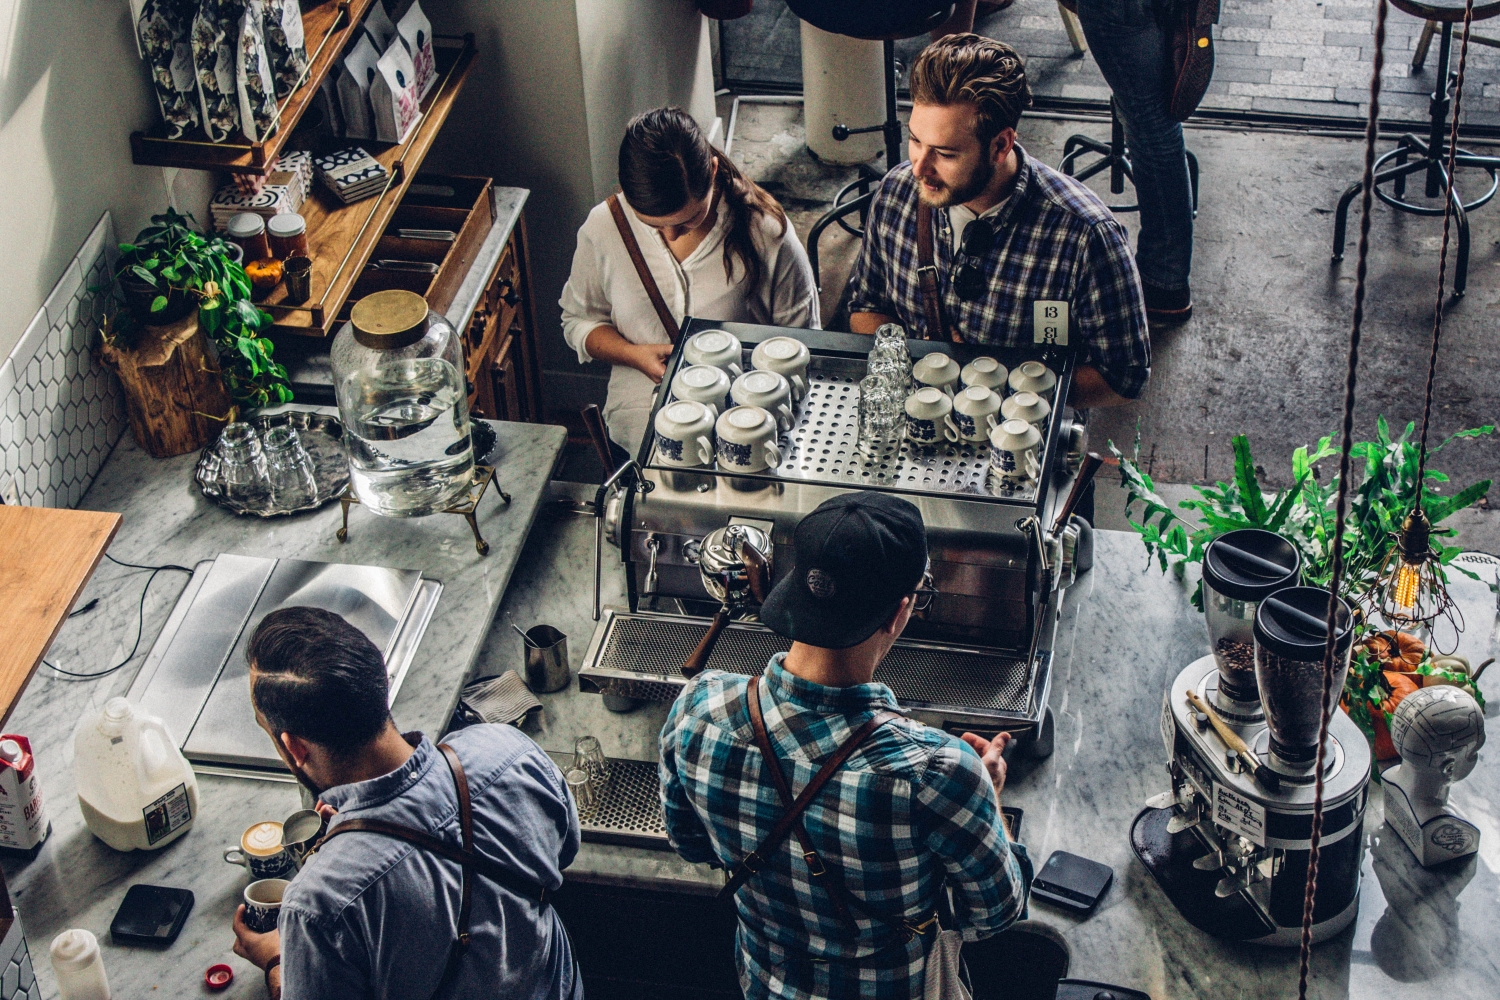 Una micropyme puede ser una cafetería con menos de 10 trabajadores